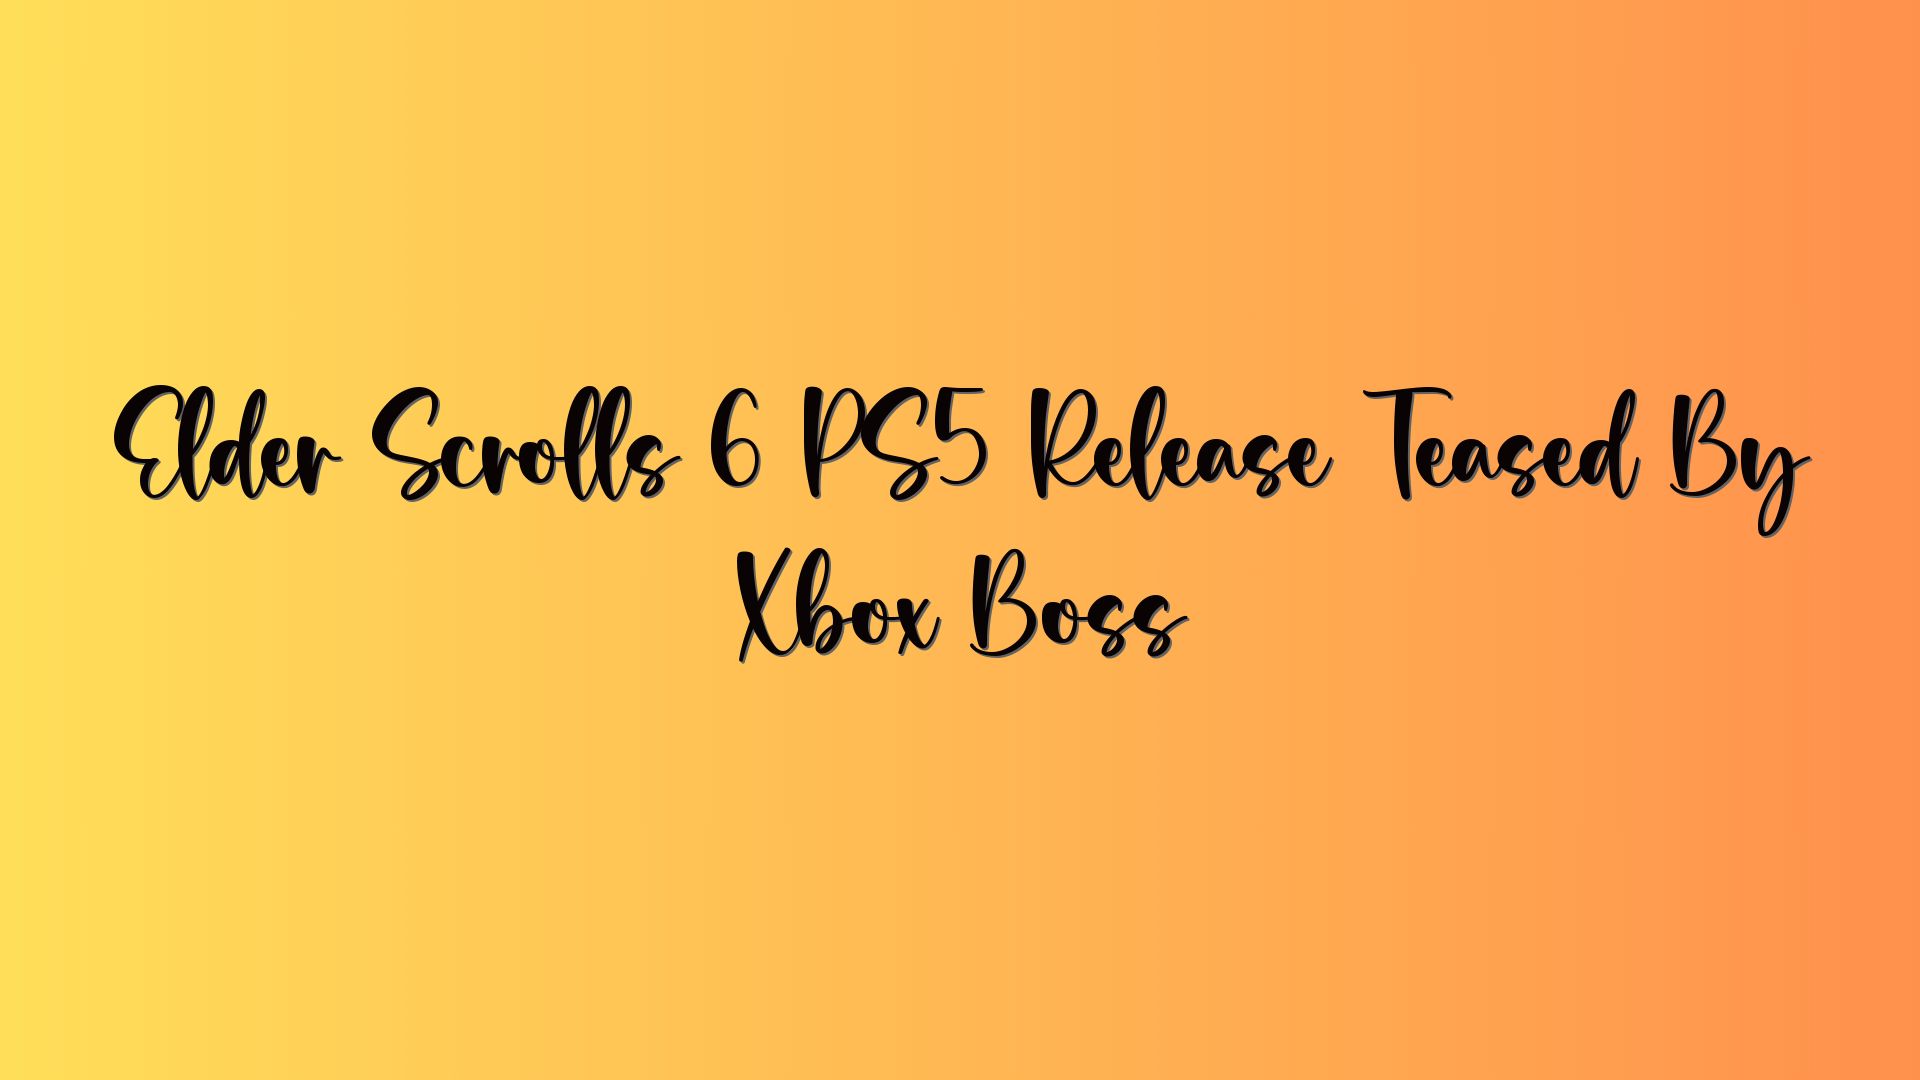 Elder Scrolls 6 PS5 Release Teased By Xbox Boss